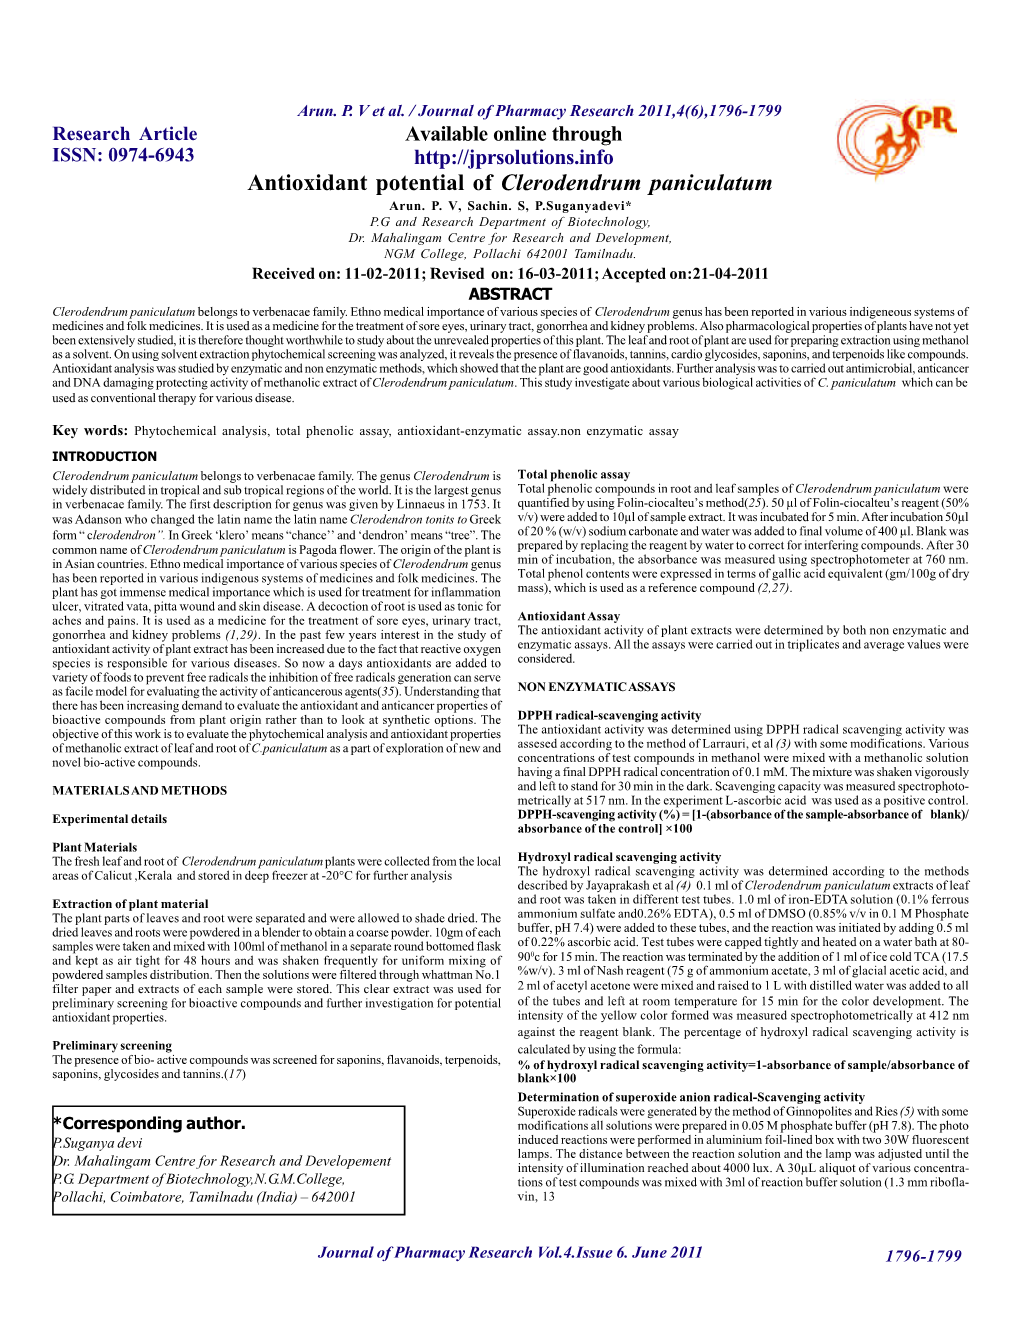 Antioxidant Potential of Clerodendrum Paniculatum Arun